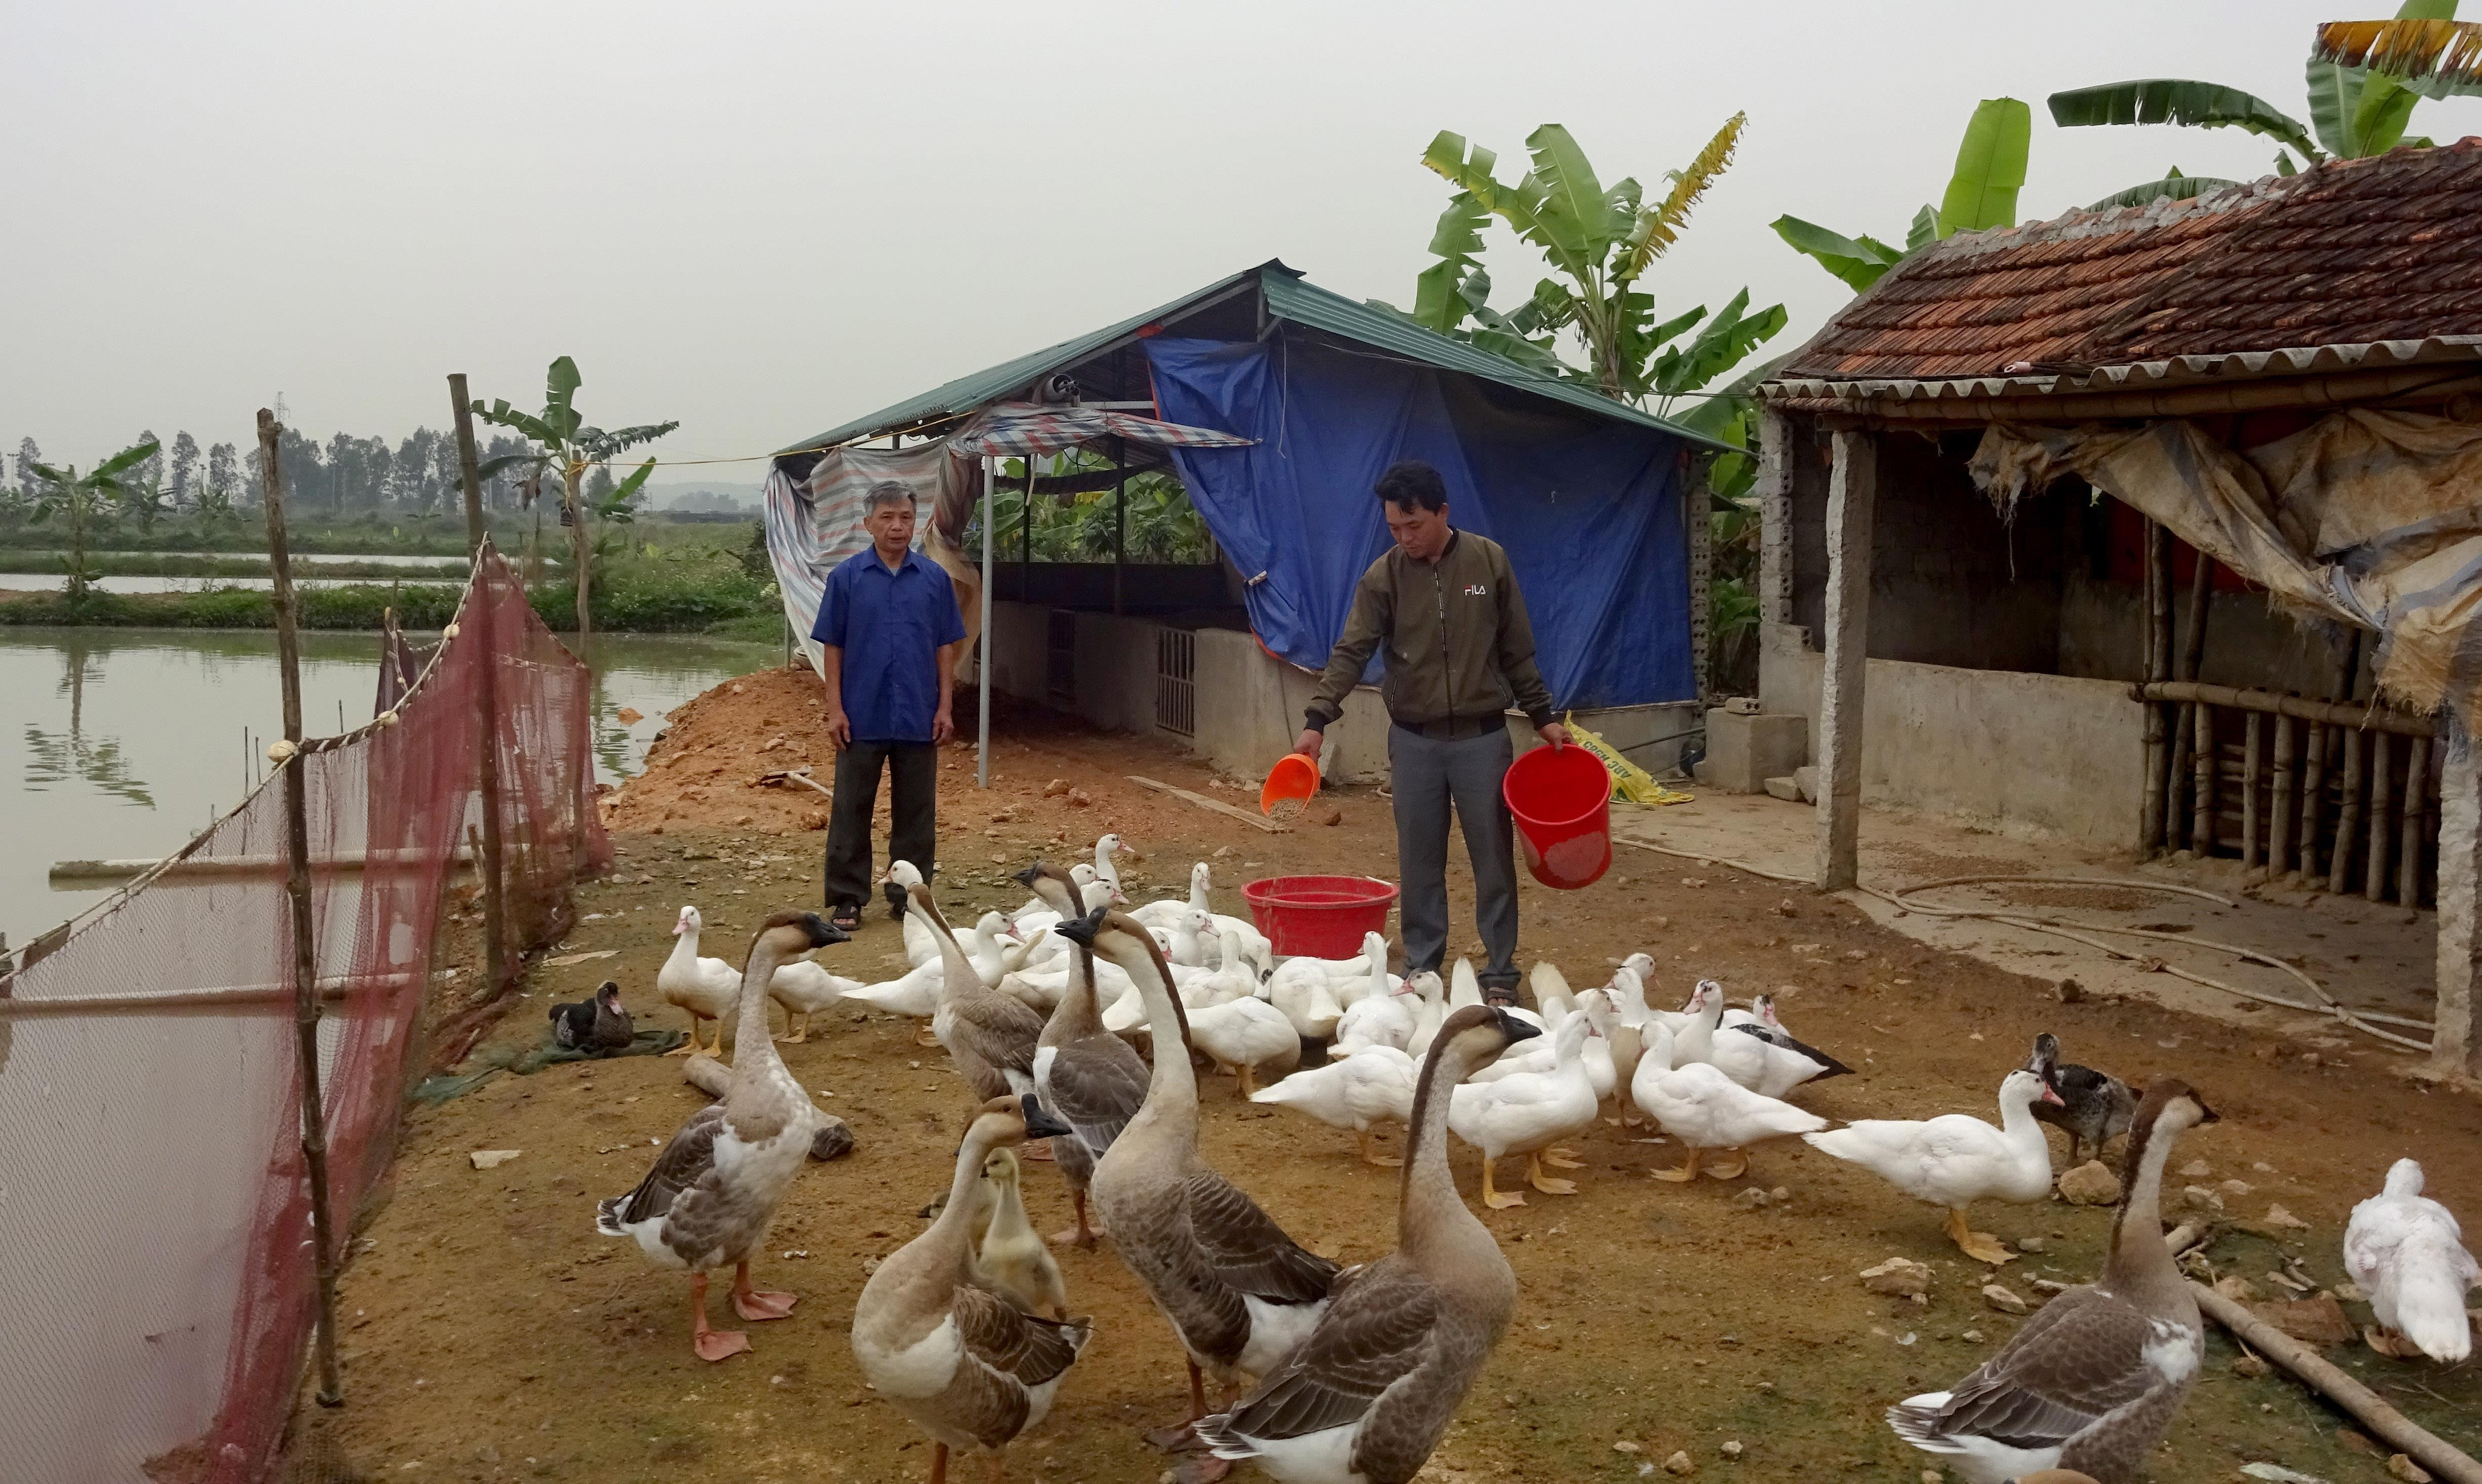 Trang trại chăn nuôi tổng hợp của gia đình anh Nguyễn Văn Thắng, xóm Dạ Sơn, xã Đô Thành, Yên Thành cho thu nhập 150 triệu đồng/năm